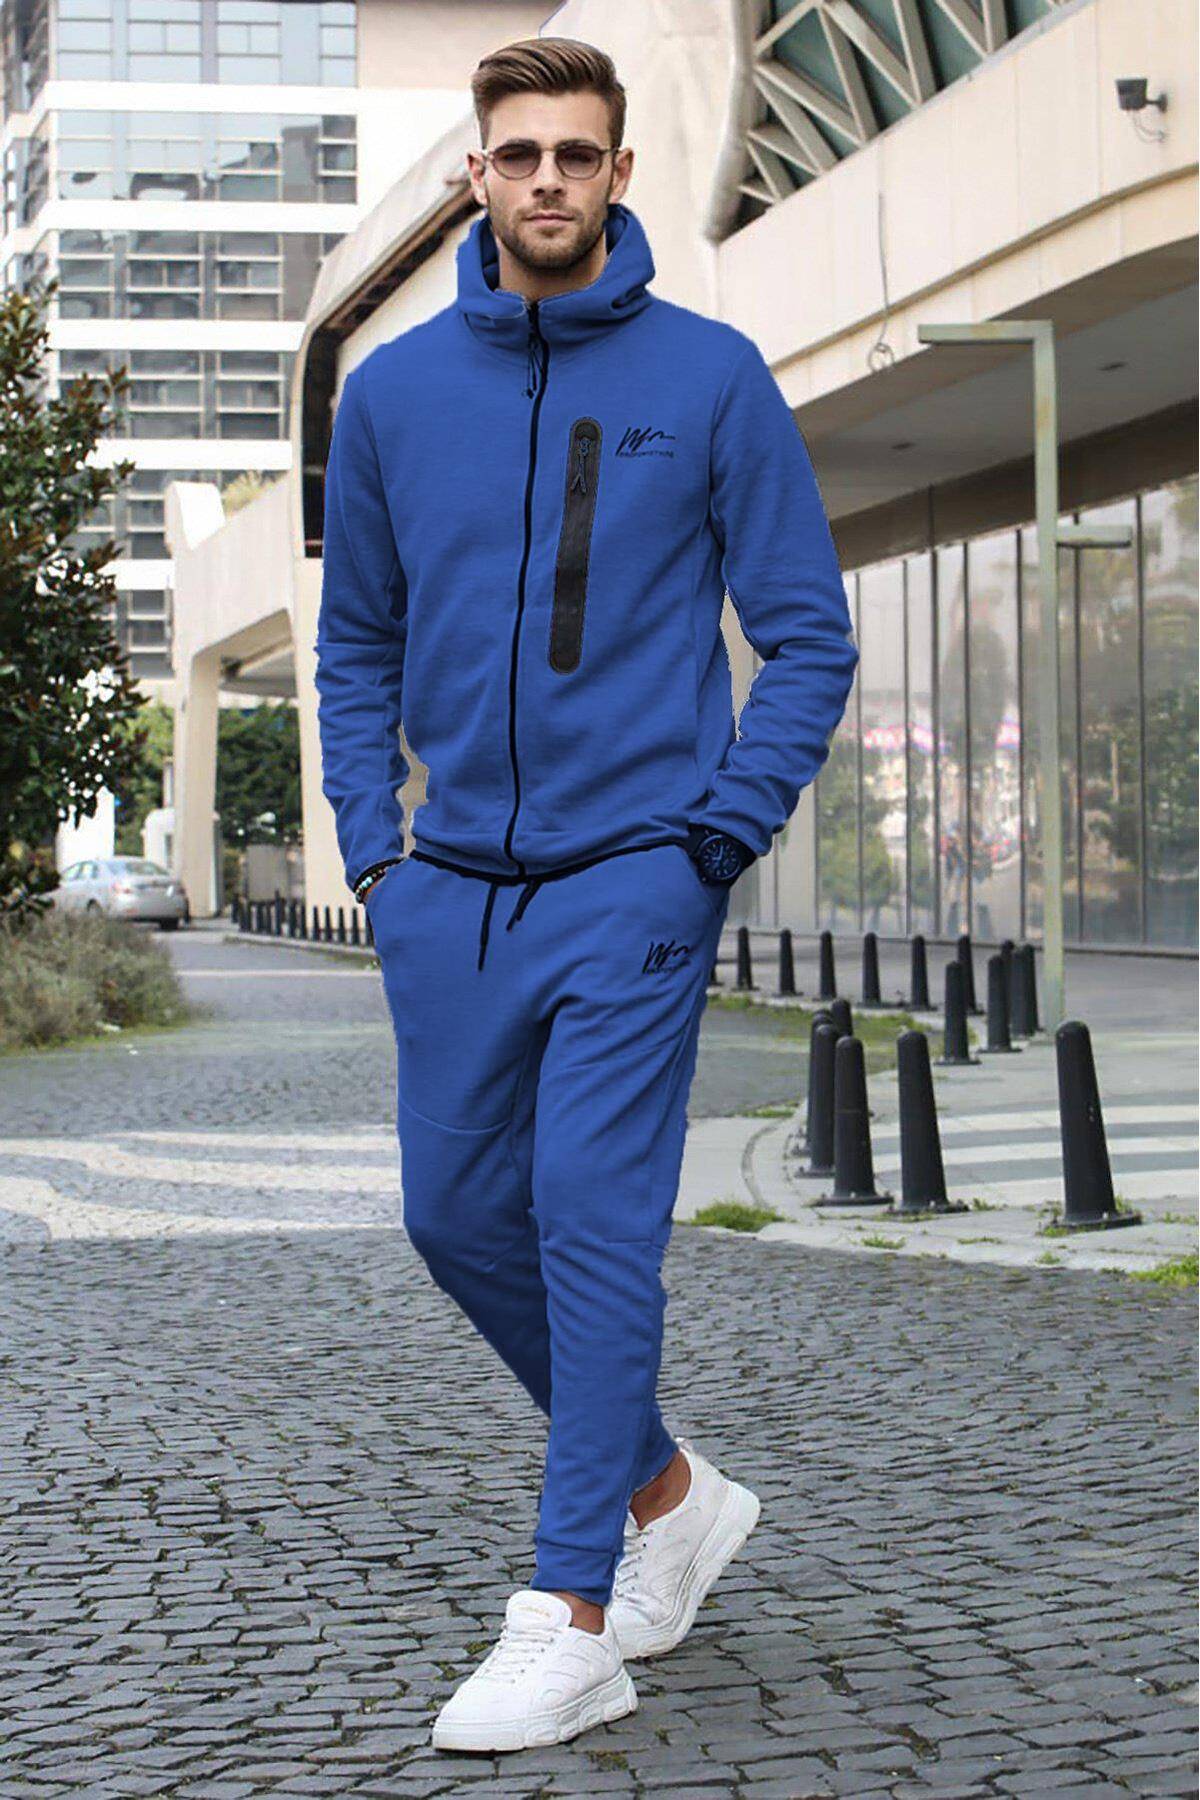 ست لباس ورزشی مردانه معمولی با چاپ نیلی